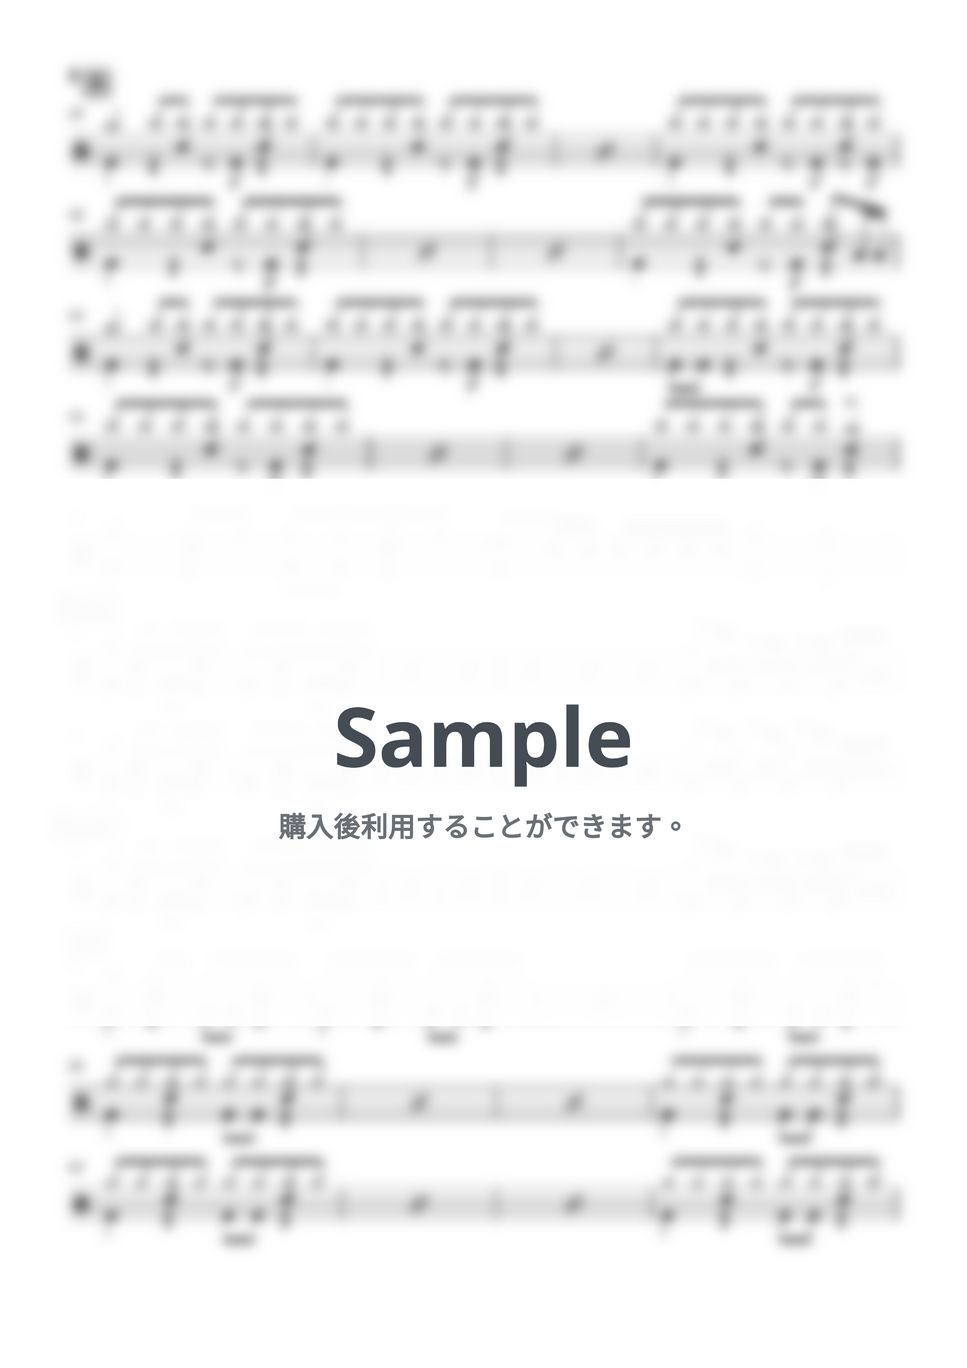 ヤングスキニー - 憂鬱とバイト (ドラム譜面) by cabal